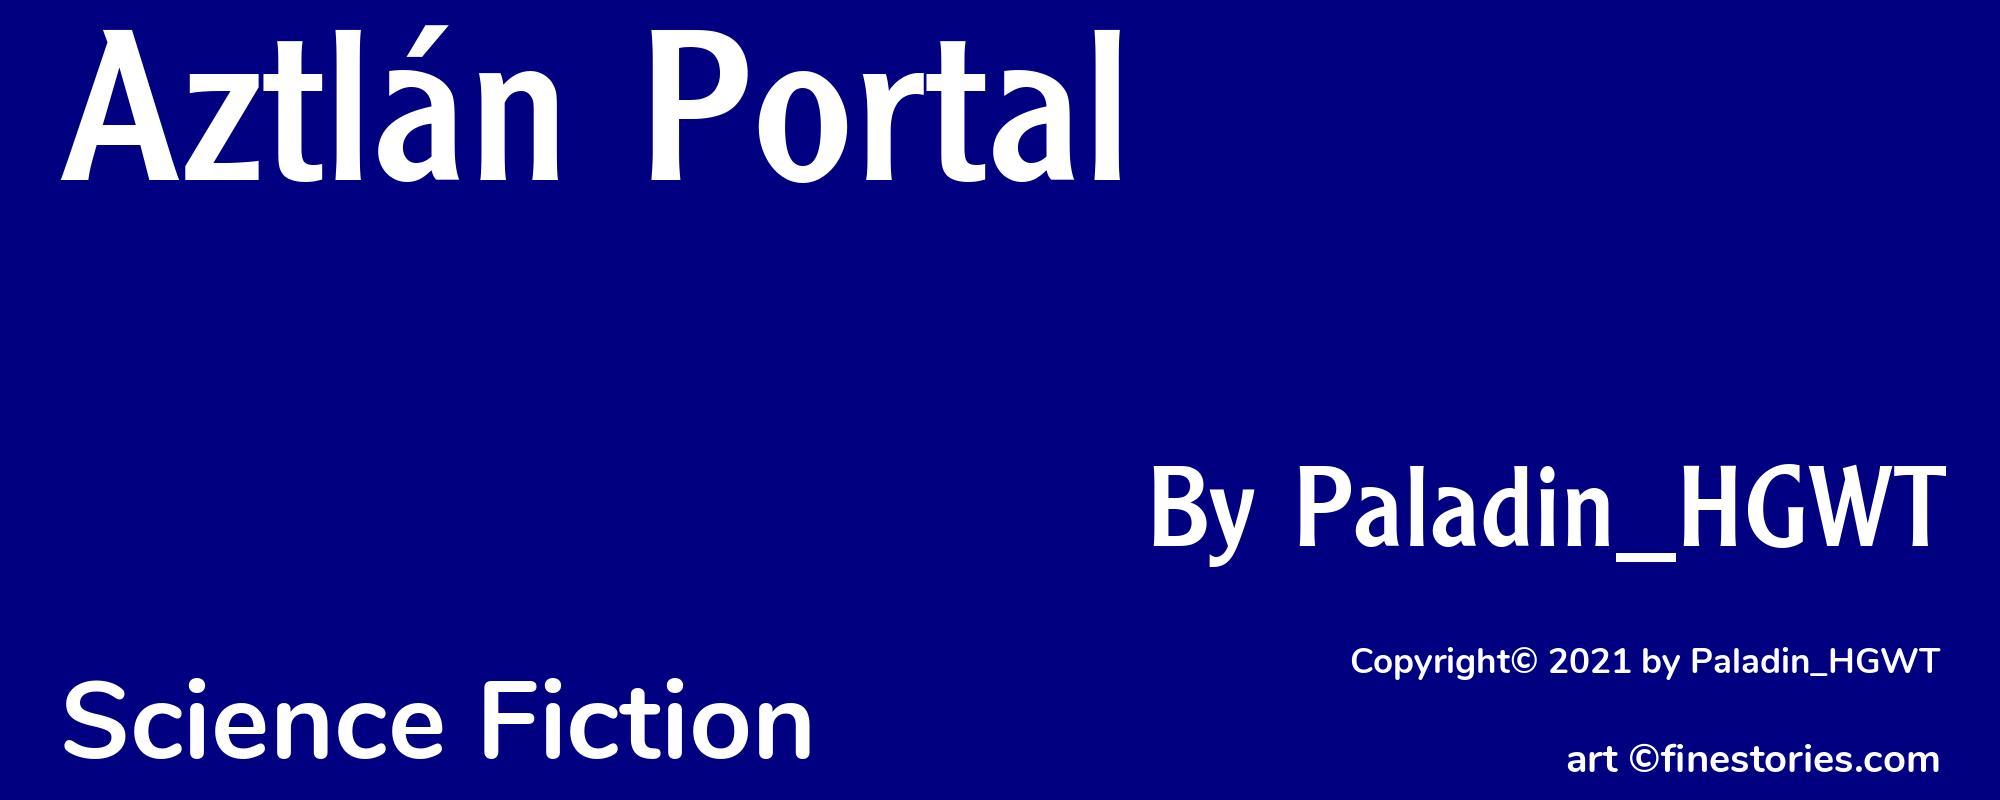 Aztlán Portal - Cover